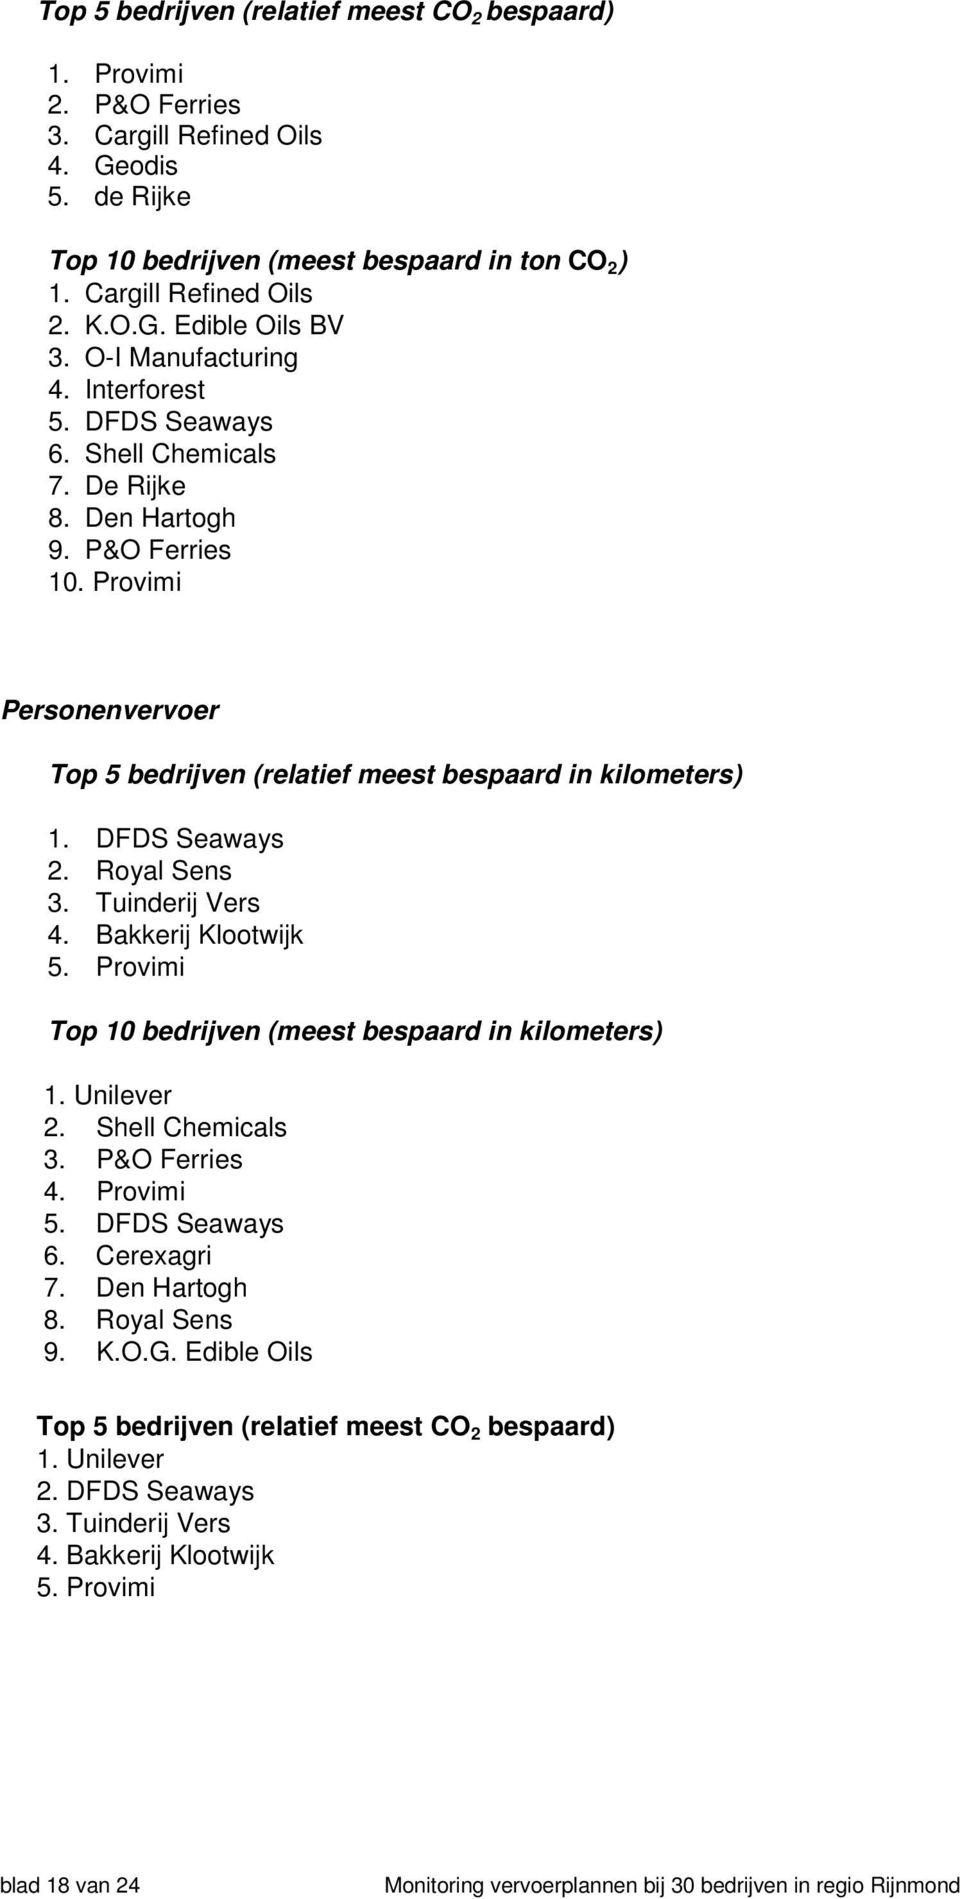 DFDS Seaways 2. Royal Sens 3. Tuinderij Vers 4. Bakkerij Klootwijk 5. Provimi Top 10 bedrijven (meest bespaard in kilometers) 1. Unilever 2. Shell Chemicals 3. P&O Ferries 4. Provimi 5.